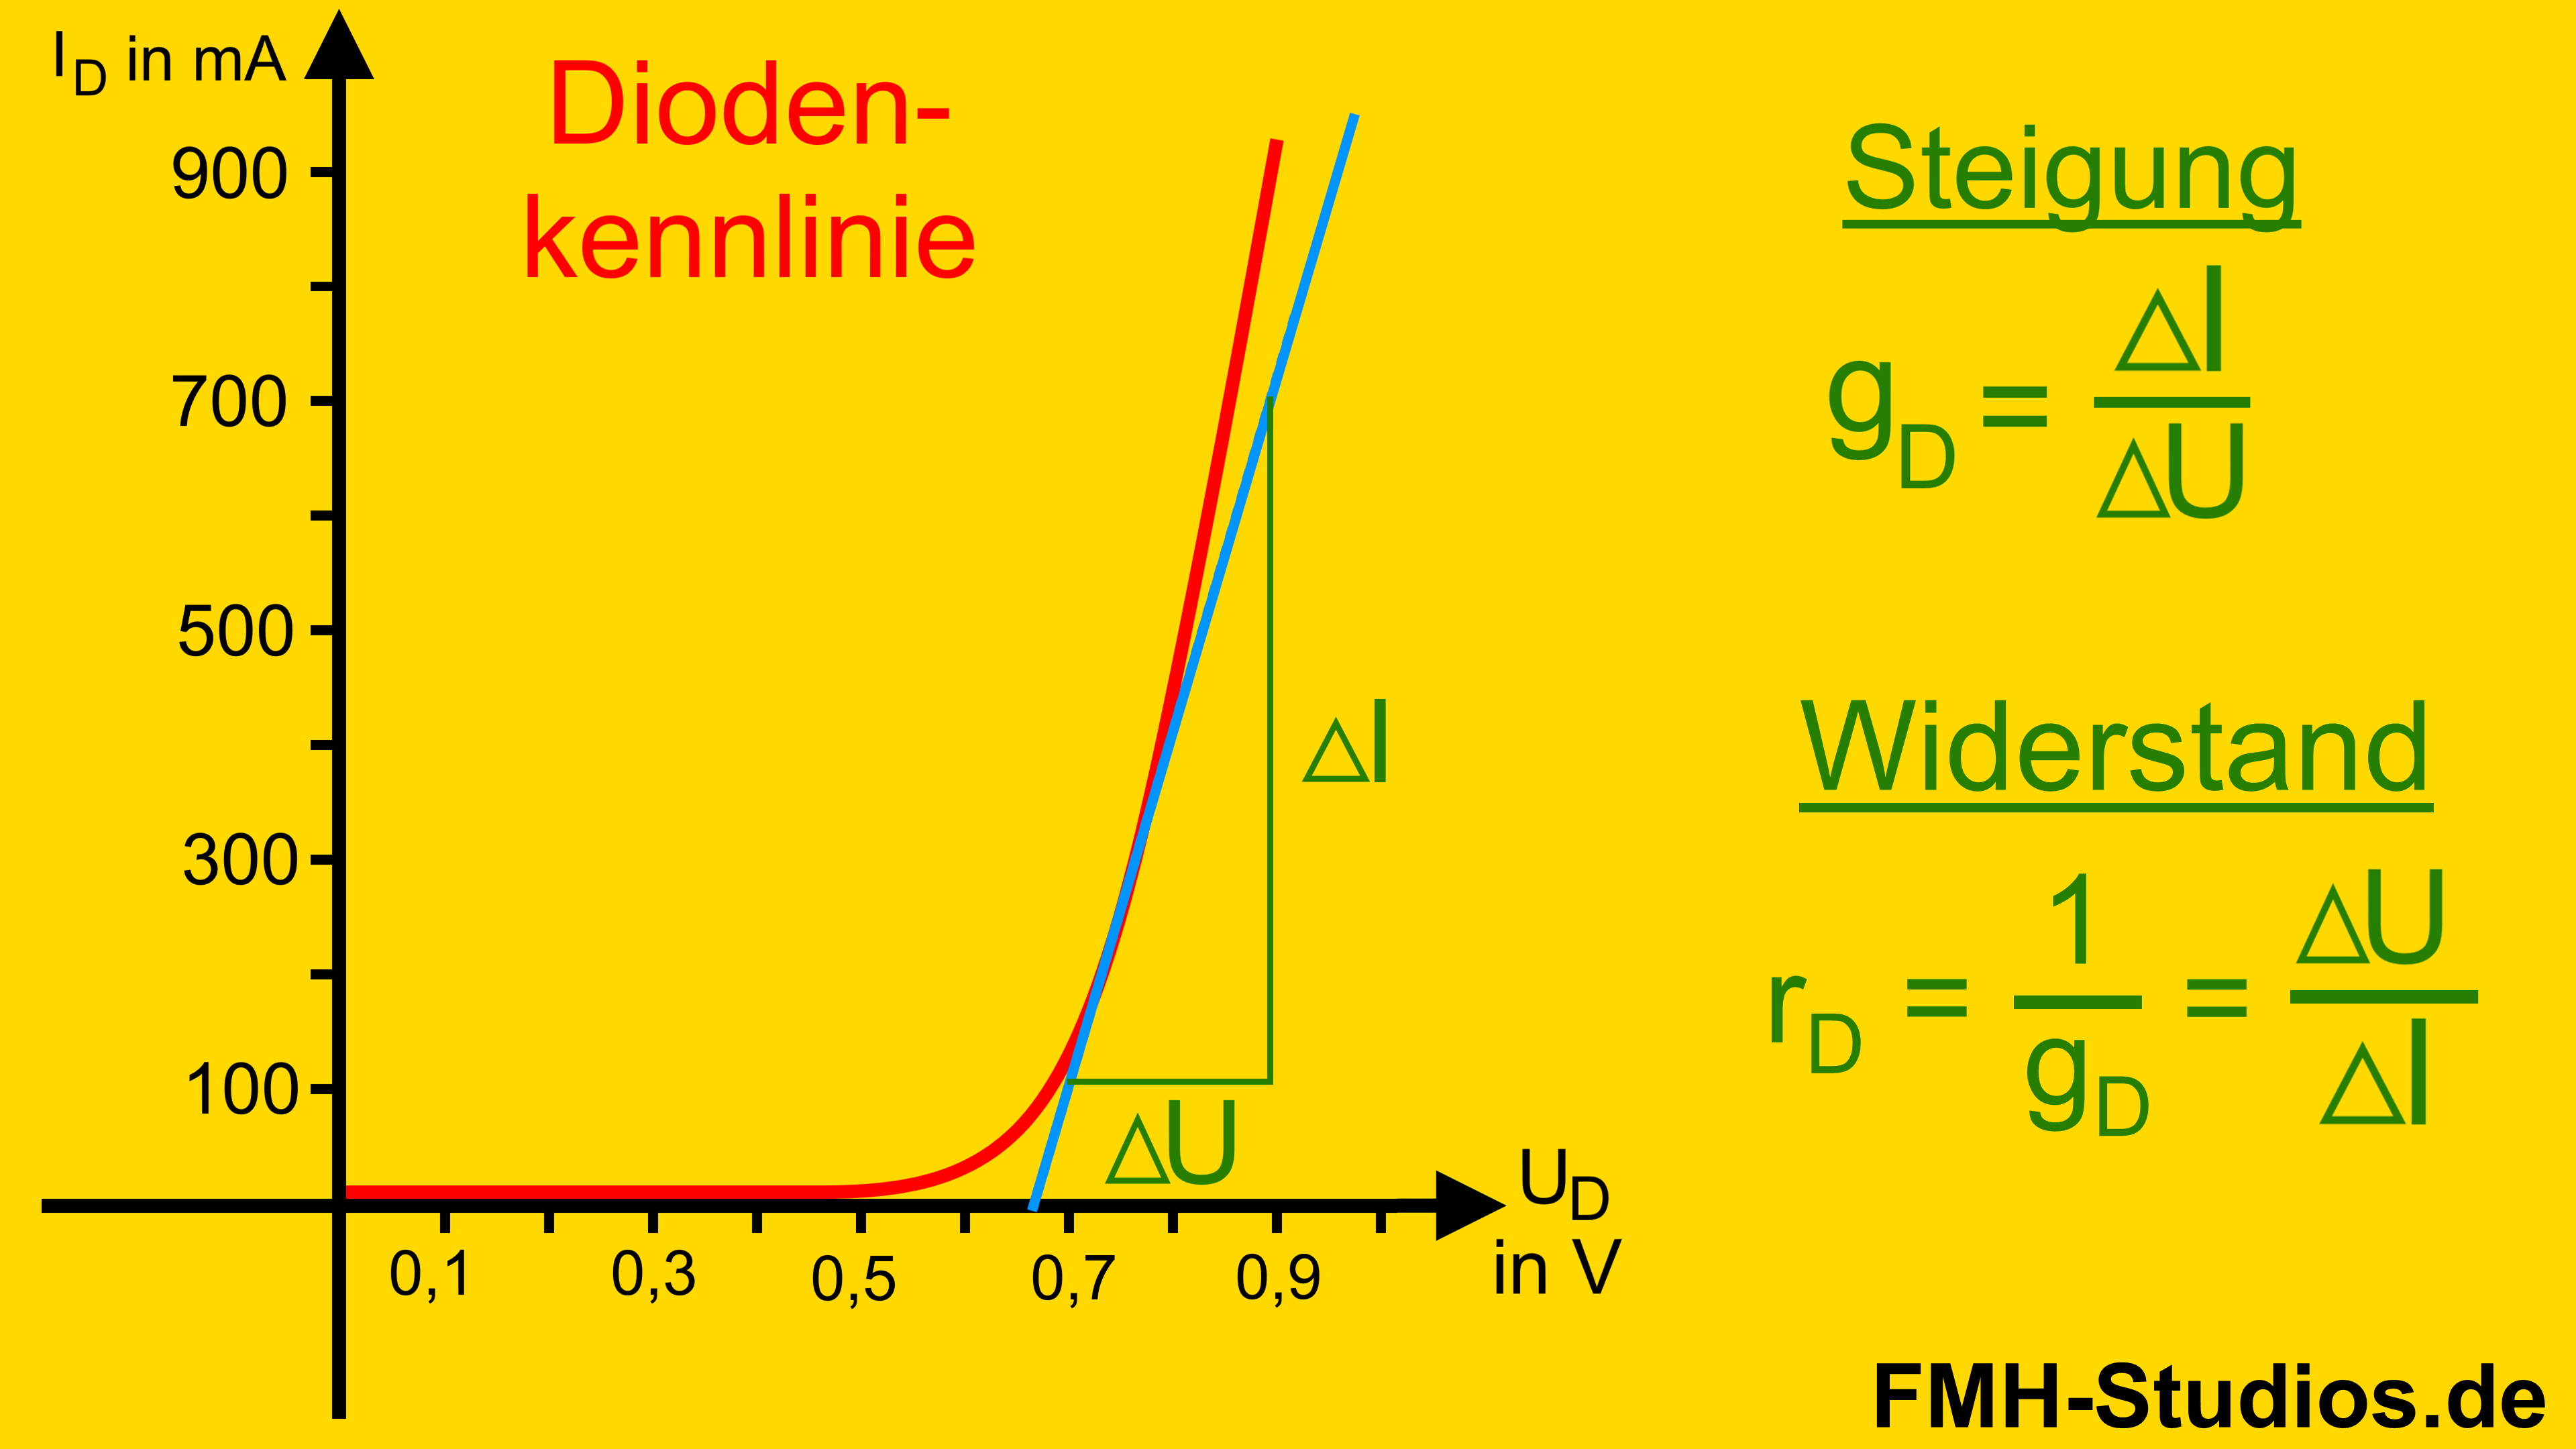 Diode - PN-Übergang - Halbleiter - Kleinsignalersatzschaltbild - Kleinsignal - Ersatzschaltbild - Kennlinie - Schaltung - Spannungsquelle - Widerstand - Berechnung - berechnen - Formel